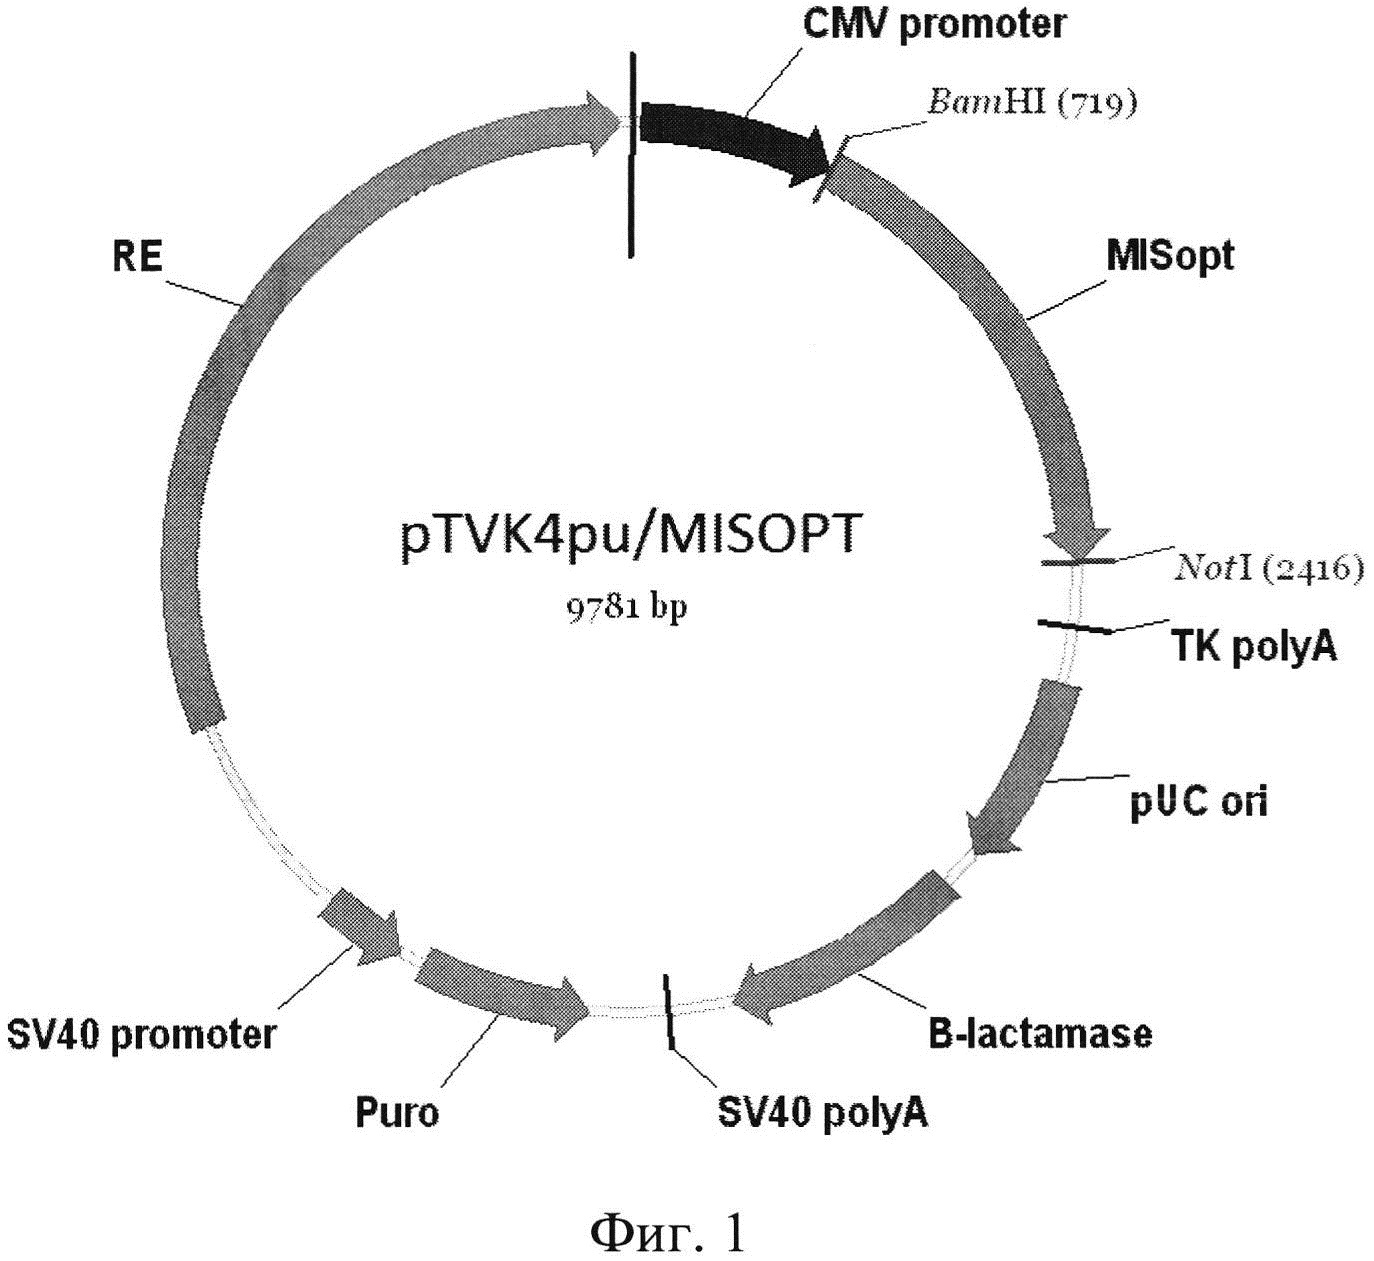 Синтетическая ДНК, кодирующая антимюллеров гормон человека, содержащий ее экспрессионный вектор pTVK4pu/MISOPT и штамм клеток яичников китайского хомячка CHO-MIS - продуцент рекомбинантного антимюллерового гормона человека